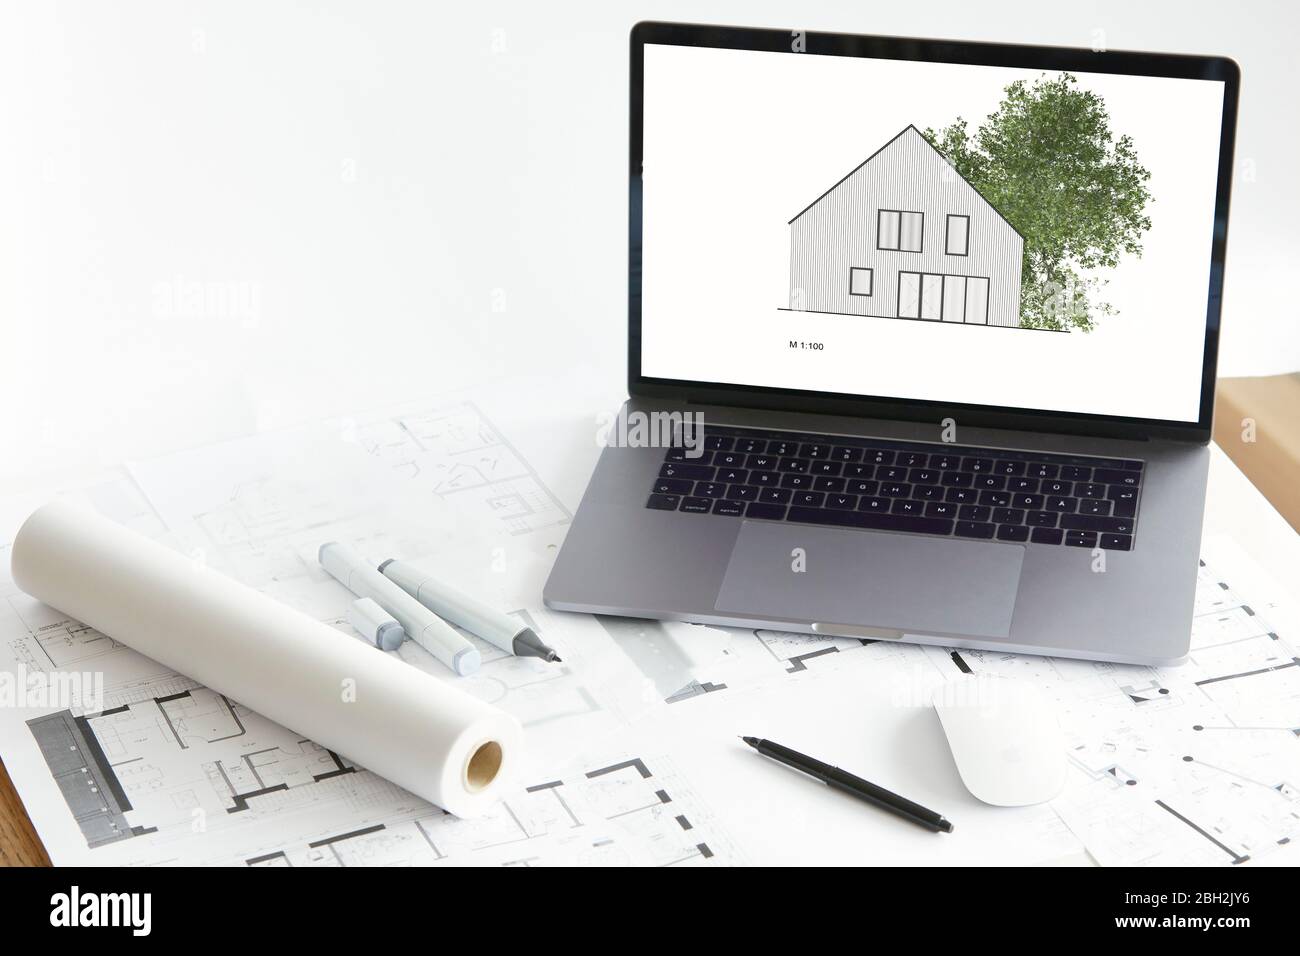 Modello di architettura di proprietà domestica con albero su schermo di laptop, piano di costruzione Foto Stock